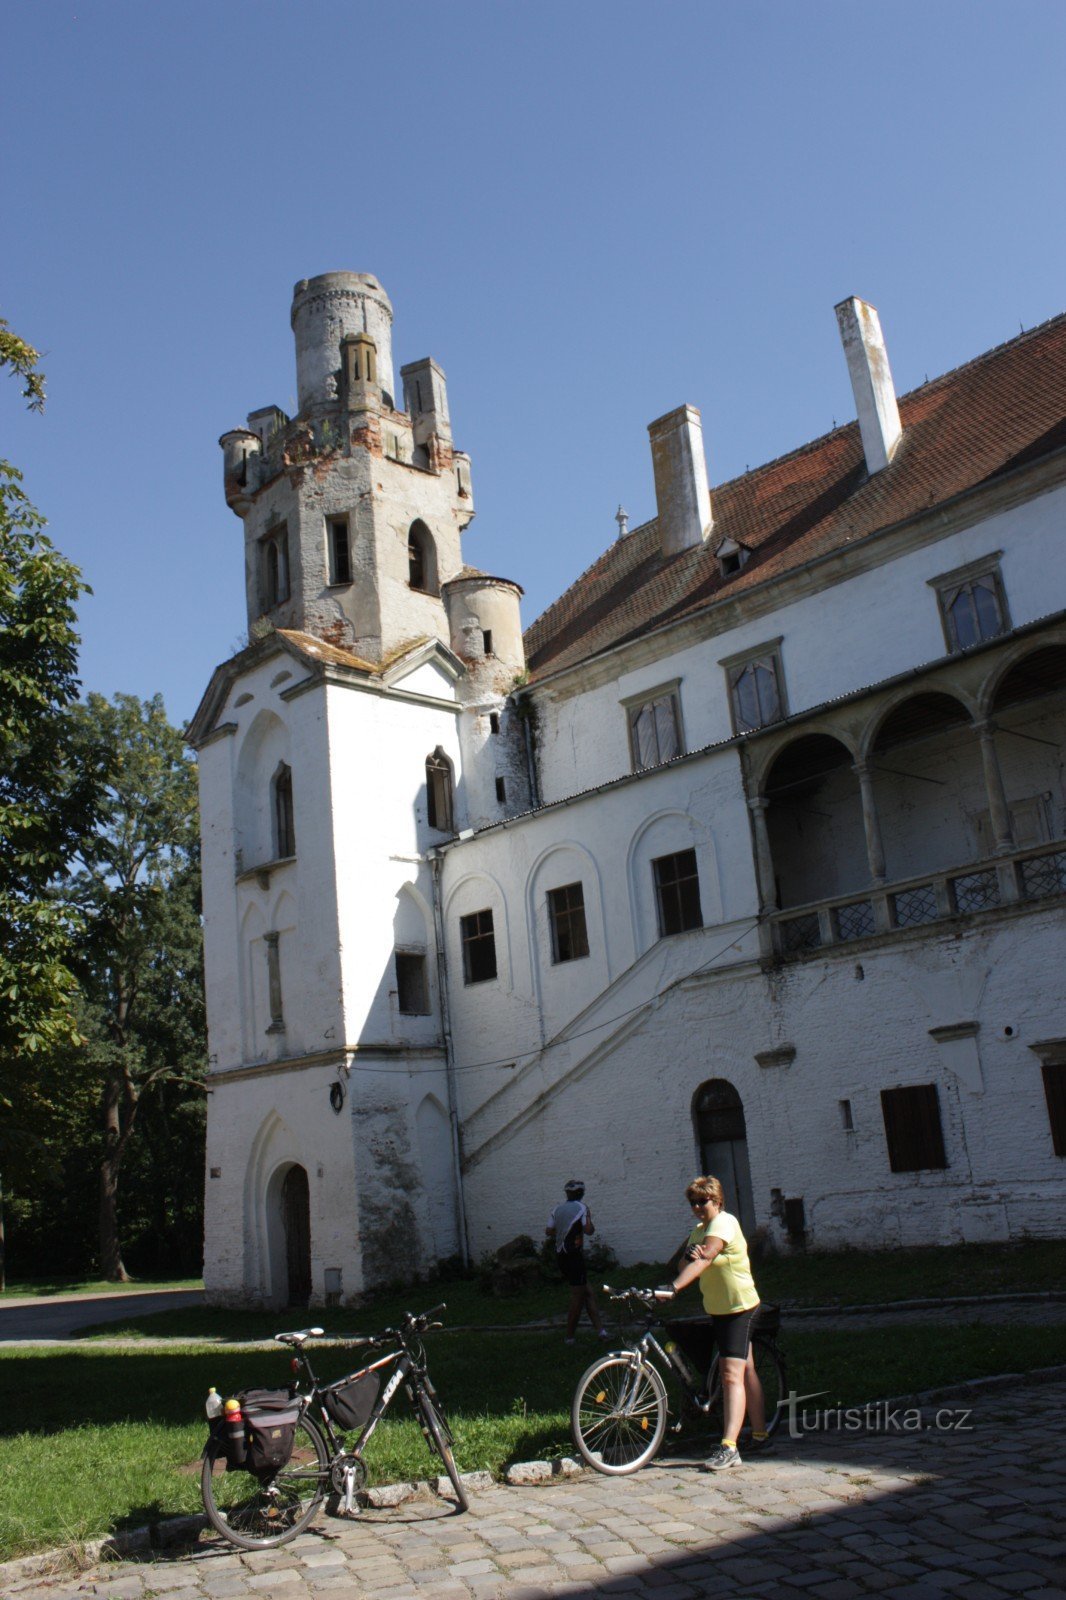 Château de Břeclav, à l'origine un château situé sur le site d'un fort du XIe siècle